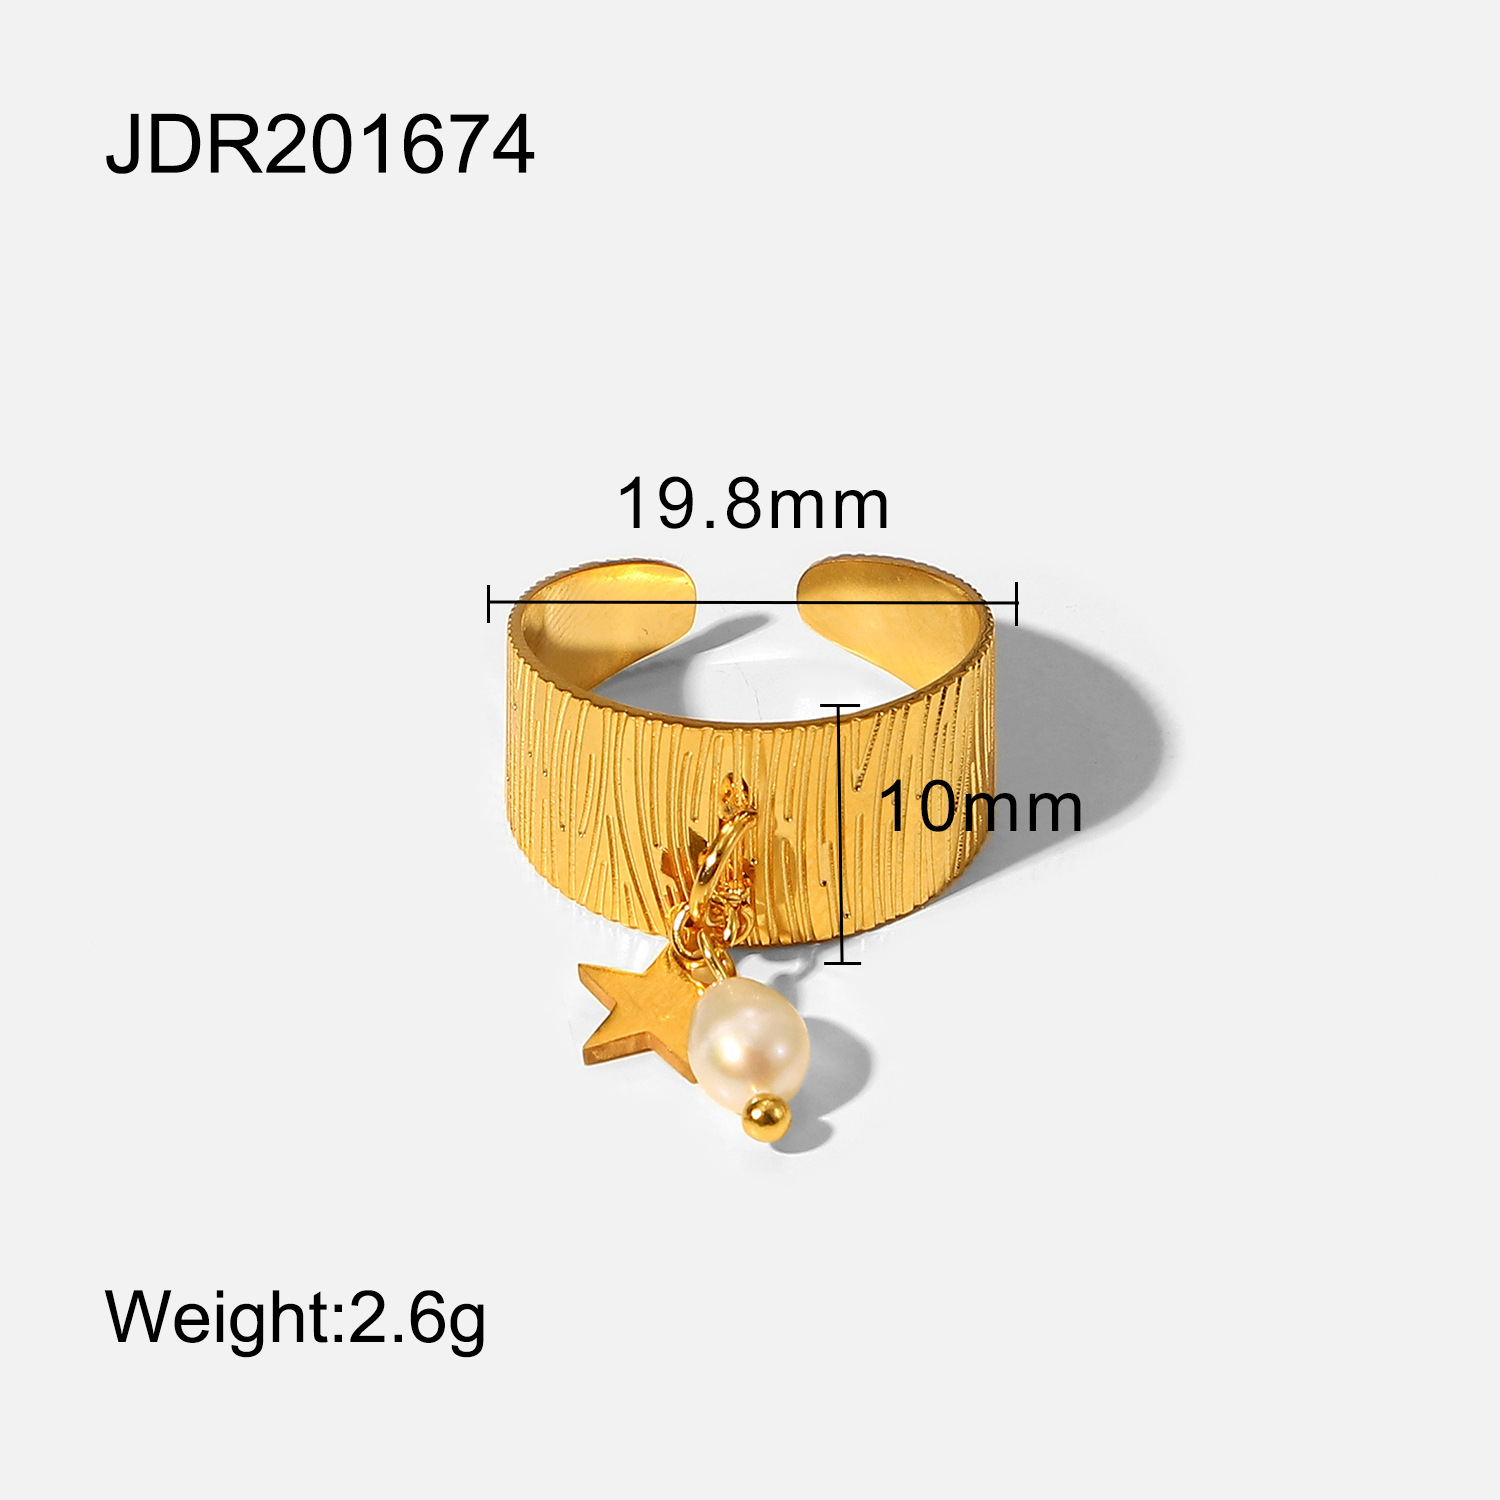 JDR201674